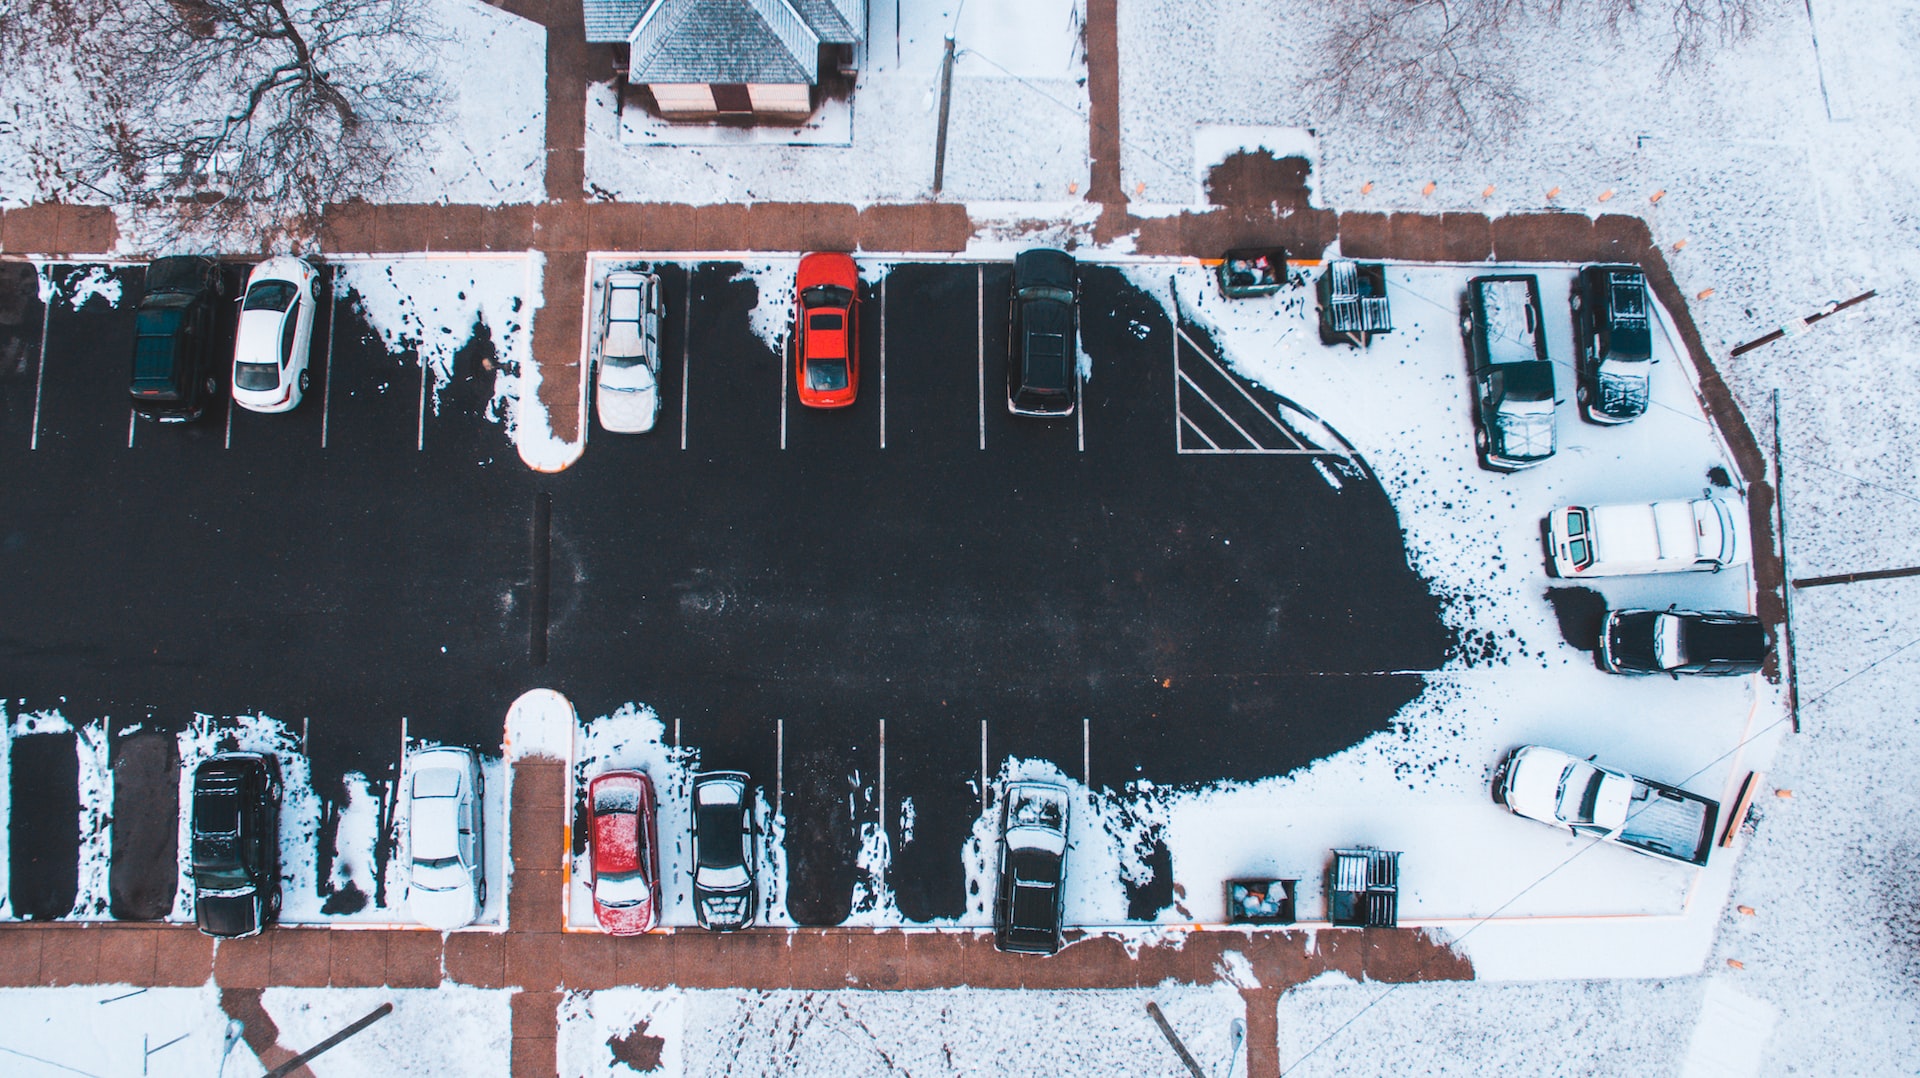 Snowy Covered Car Park